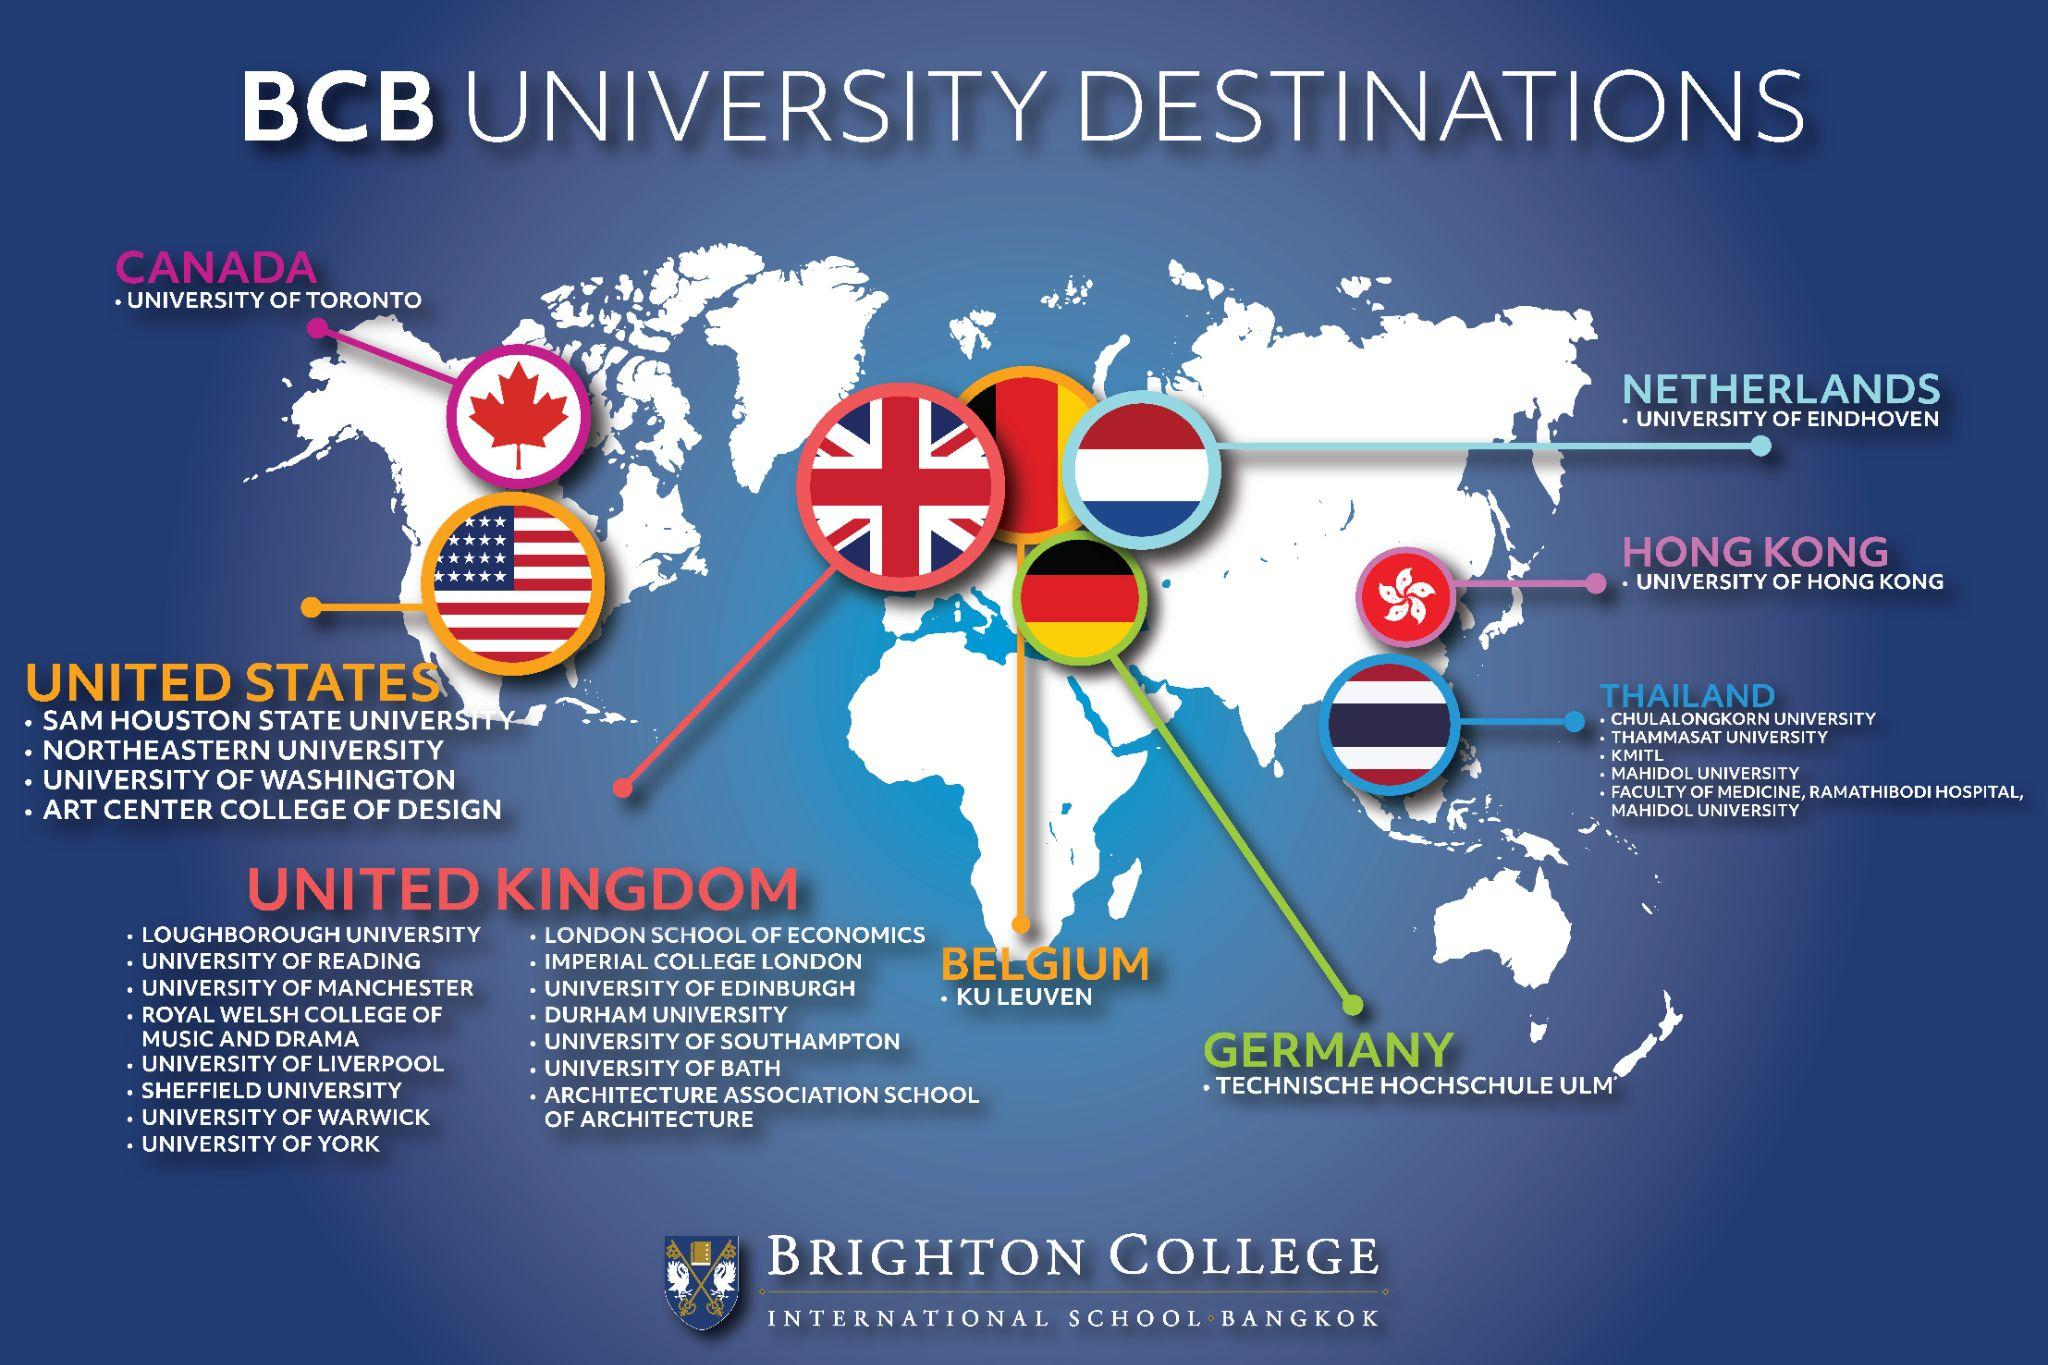 ไบรท์ตัน คอลเลจ กรุงเทพฯ แบ่งปันเคล็ดลับและวิธีสมัครเข้ามหาวิทยาลัยดังทั่วโลก